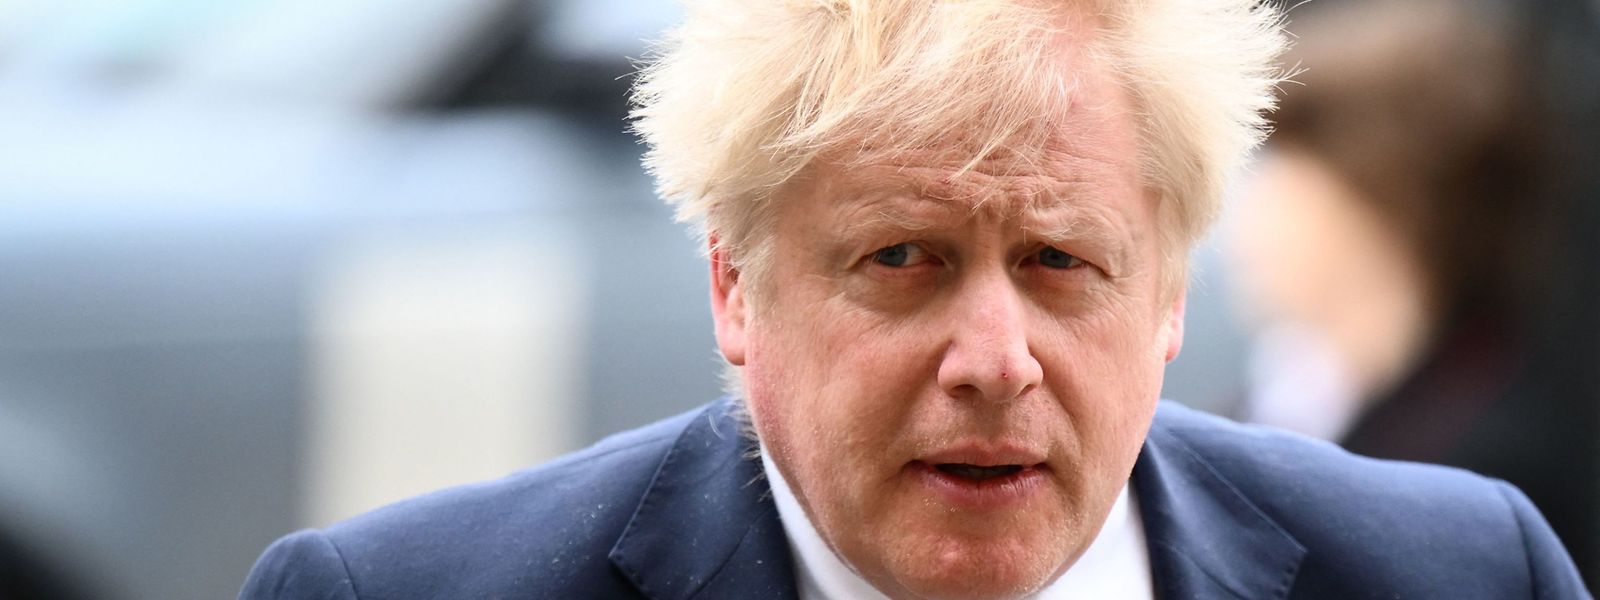 Der britische Premier Boris Johnson muss sich in der Partygate-Affäre gegen Rücktrittsforderungen zur Wehr setzen. 